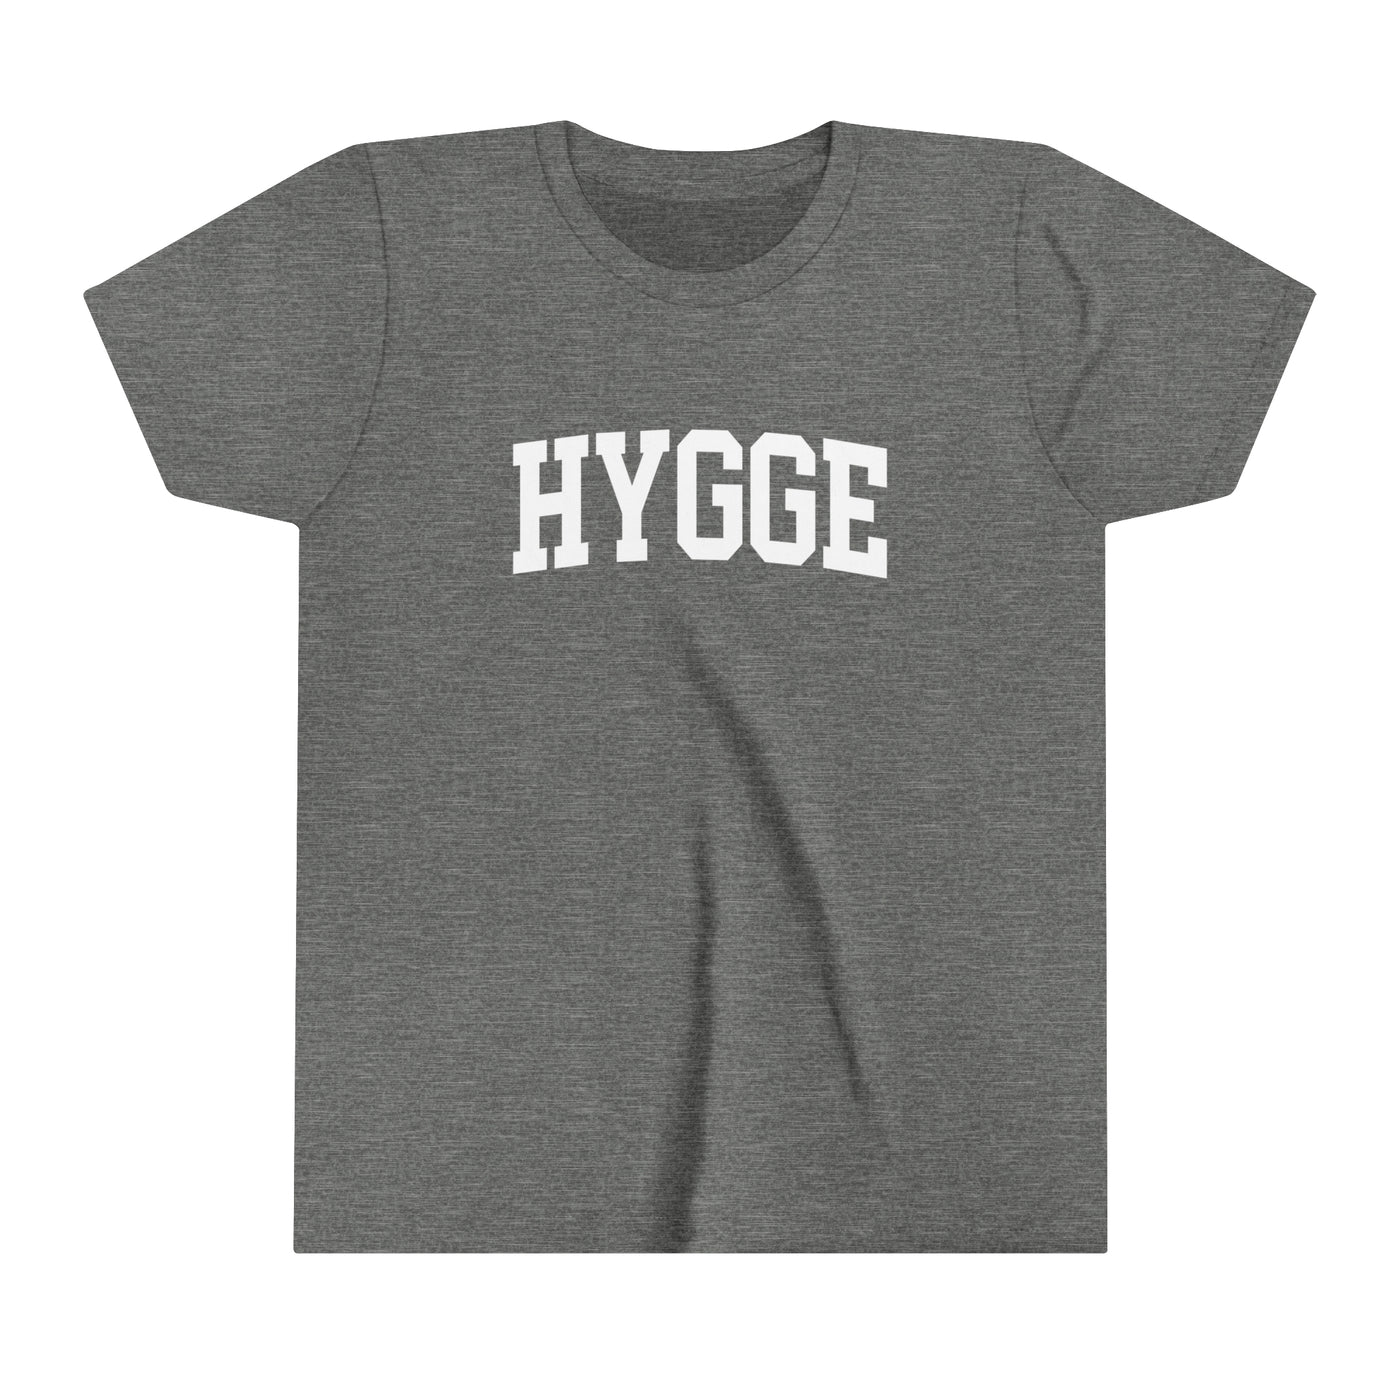 Hygge Kids T-Shirt